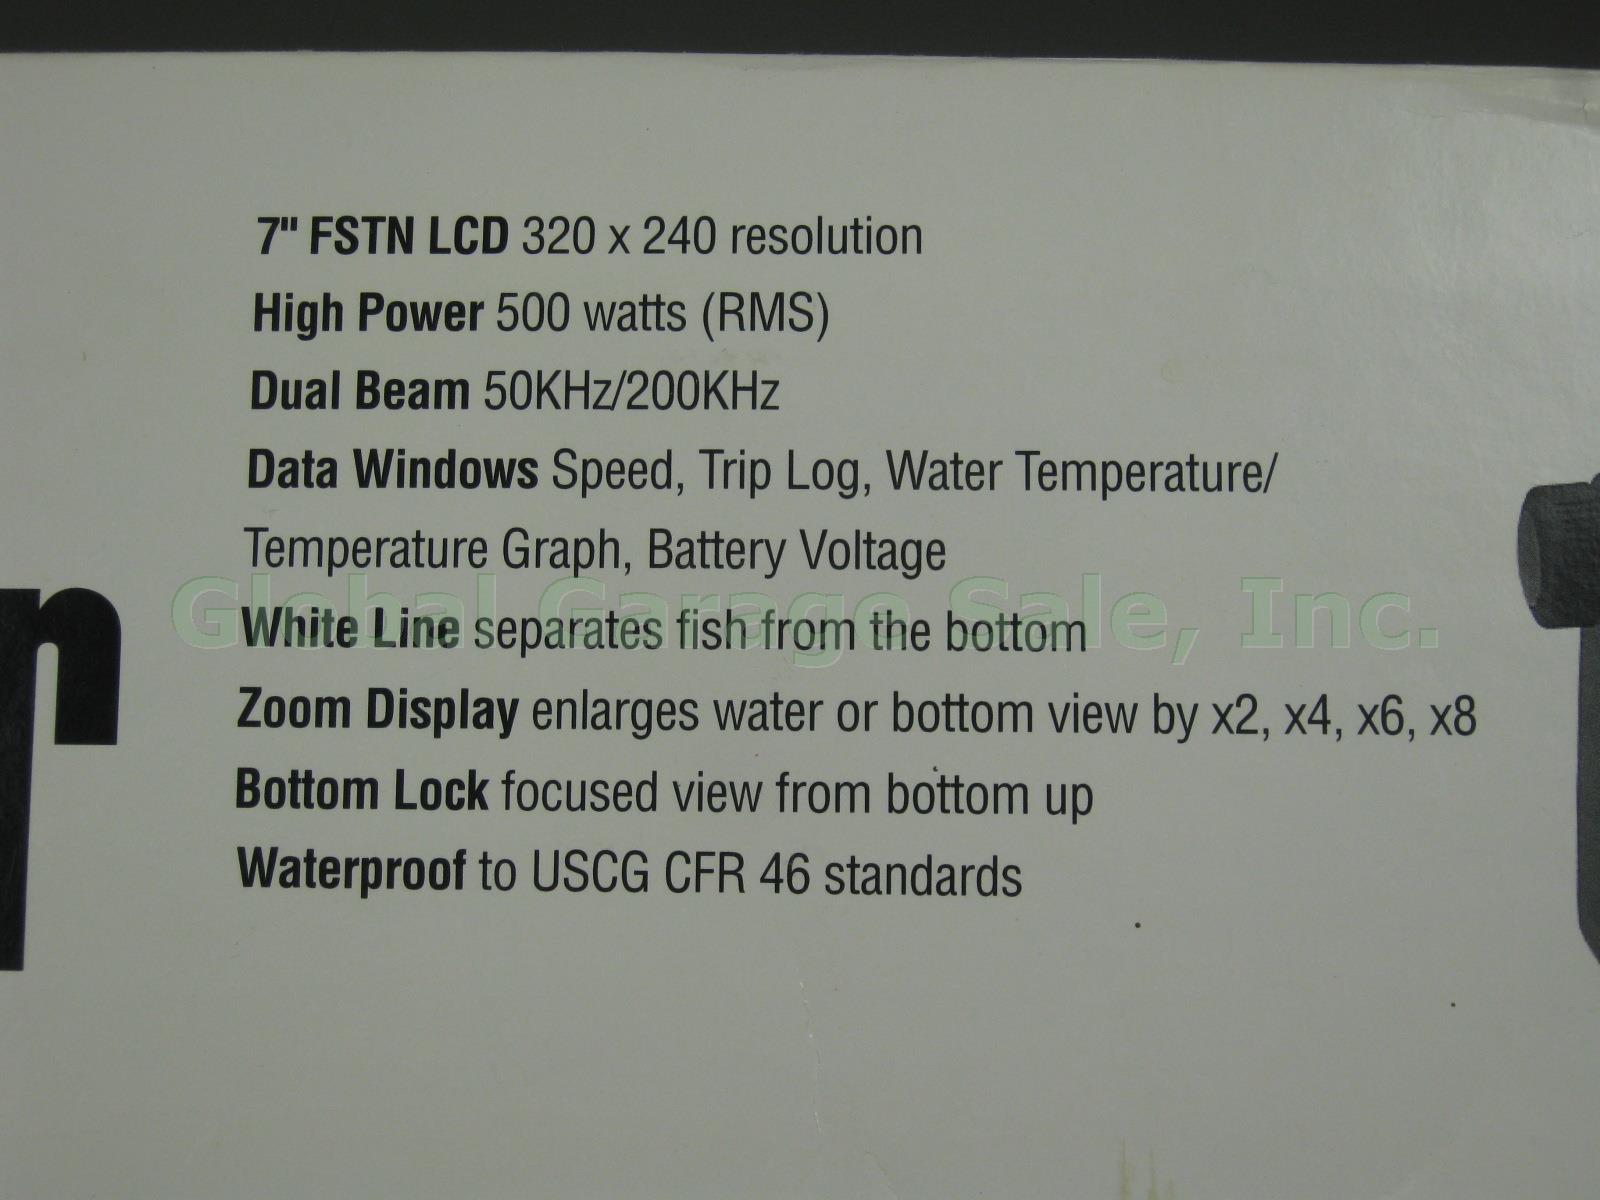 Raytheon L750 Fishfinder Transom Mount Transducer W/ 7" FSTN LCD + Box Works NR! 4